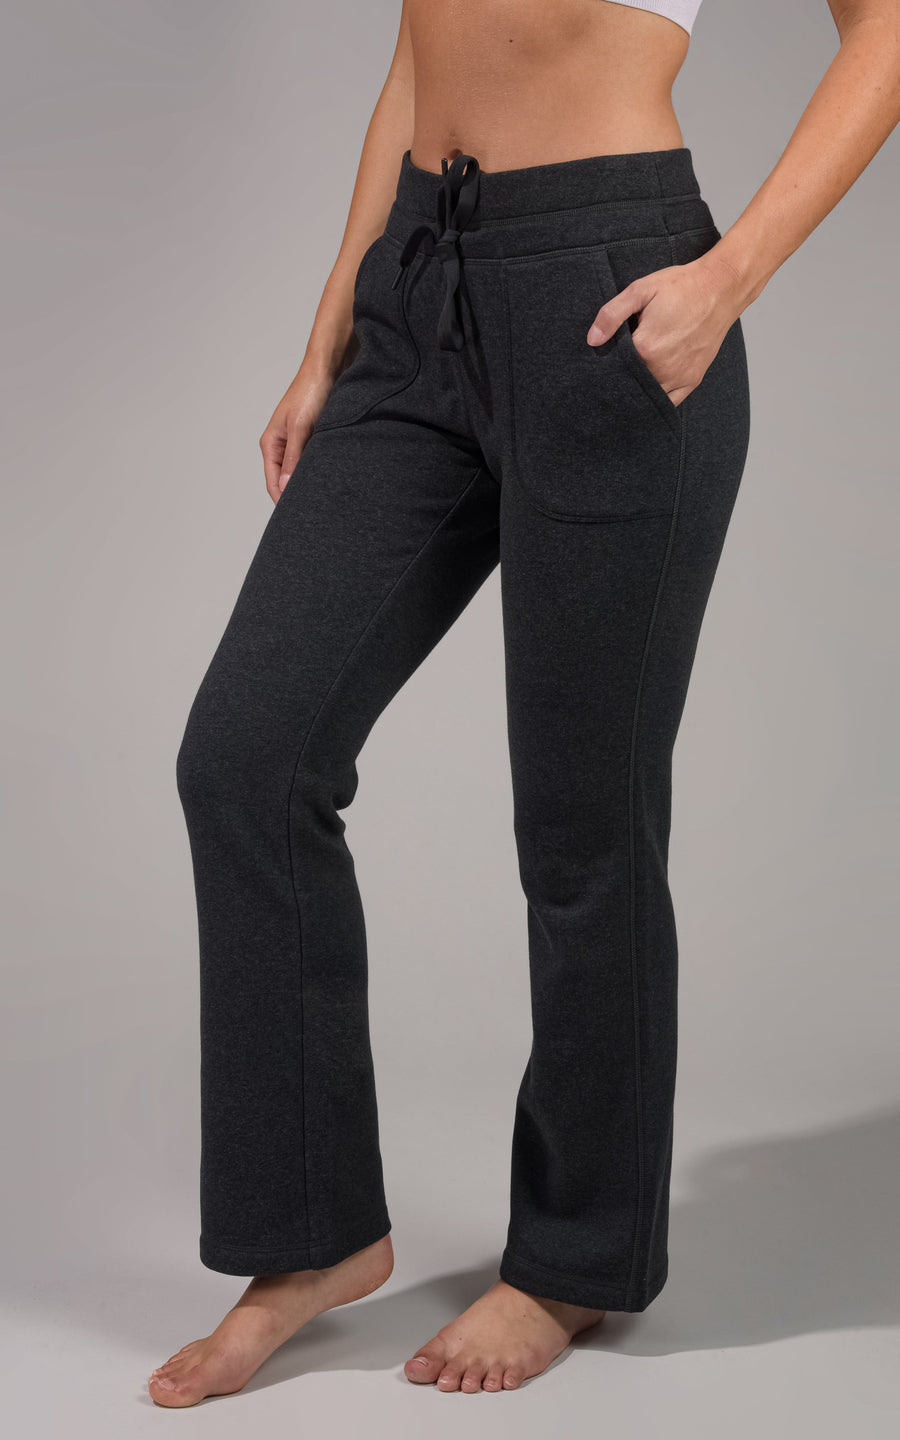 Men's Cotton Gym Pants 7/8 Slim fit 900 - Black